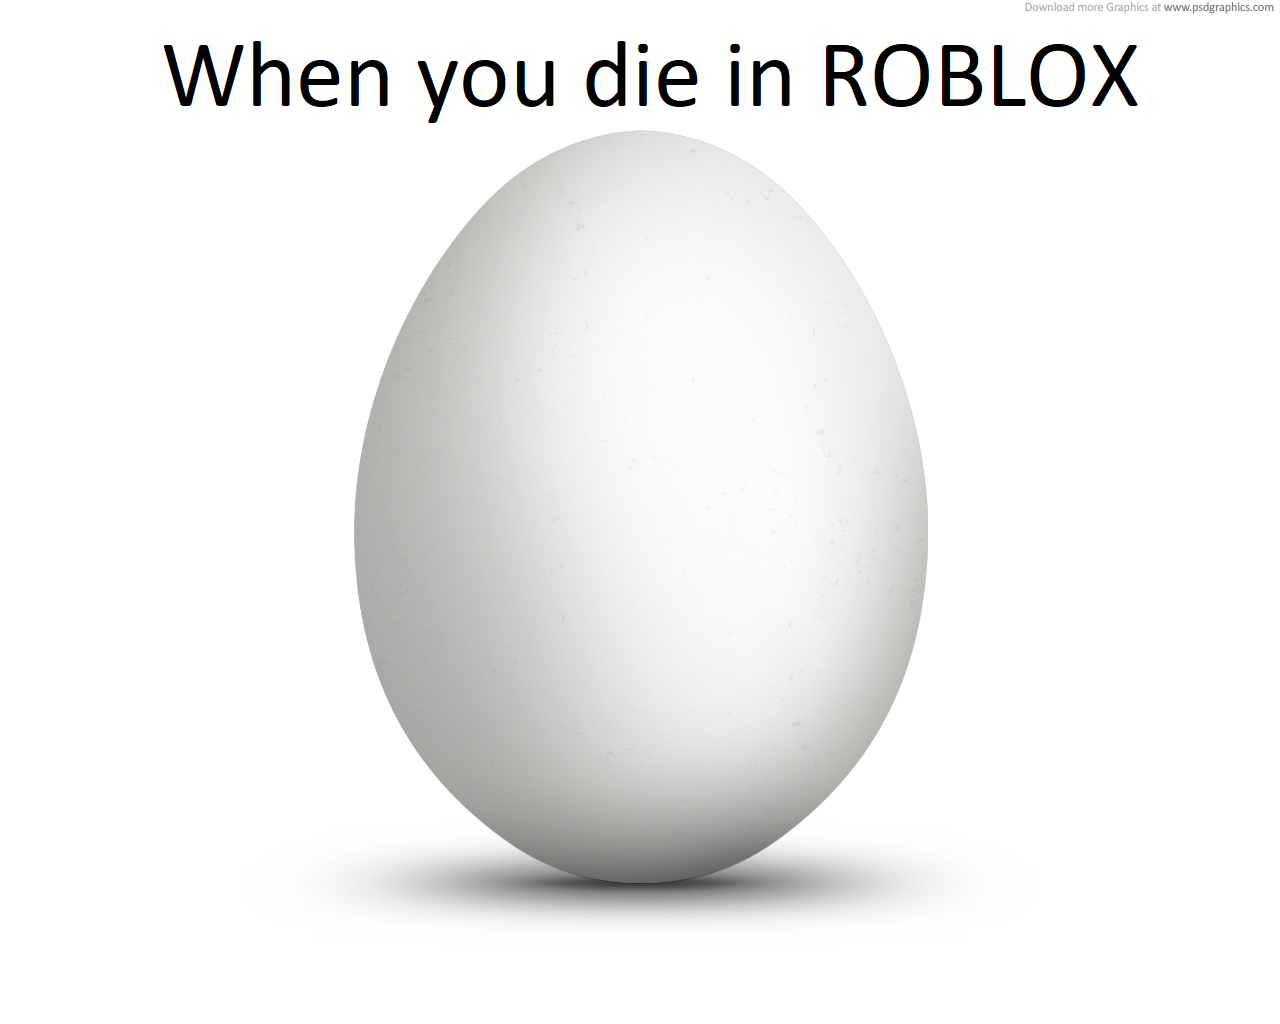 Roblox egg meme gif